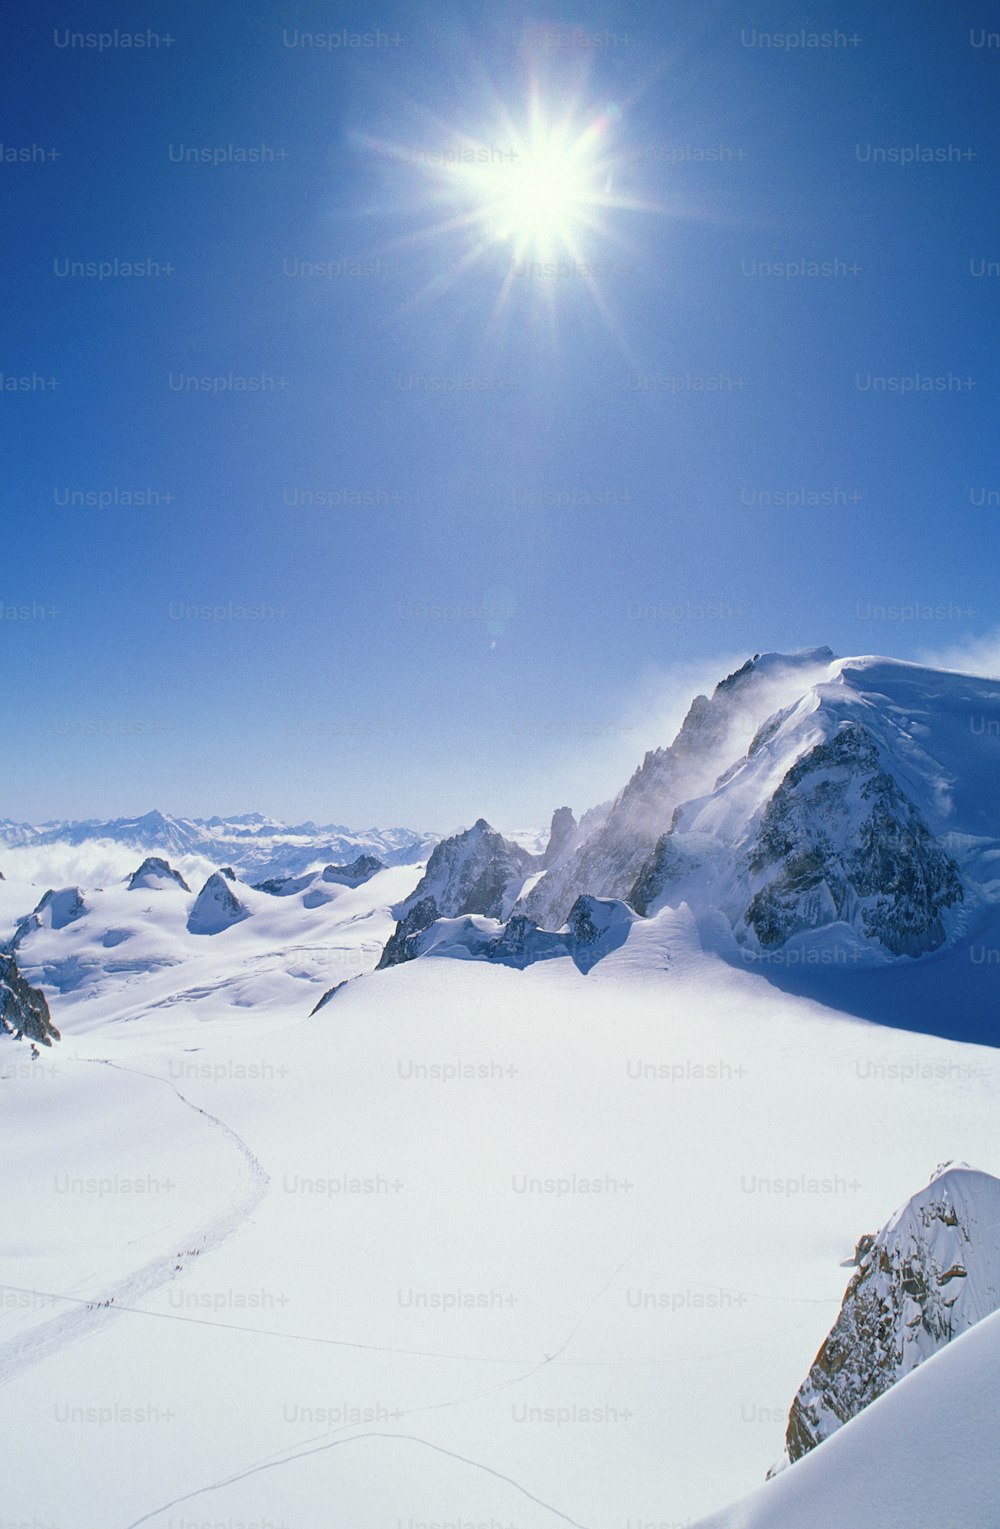 Una persona montando esquís sobre una superficie nevada